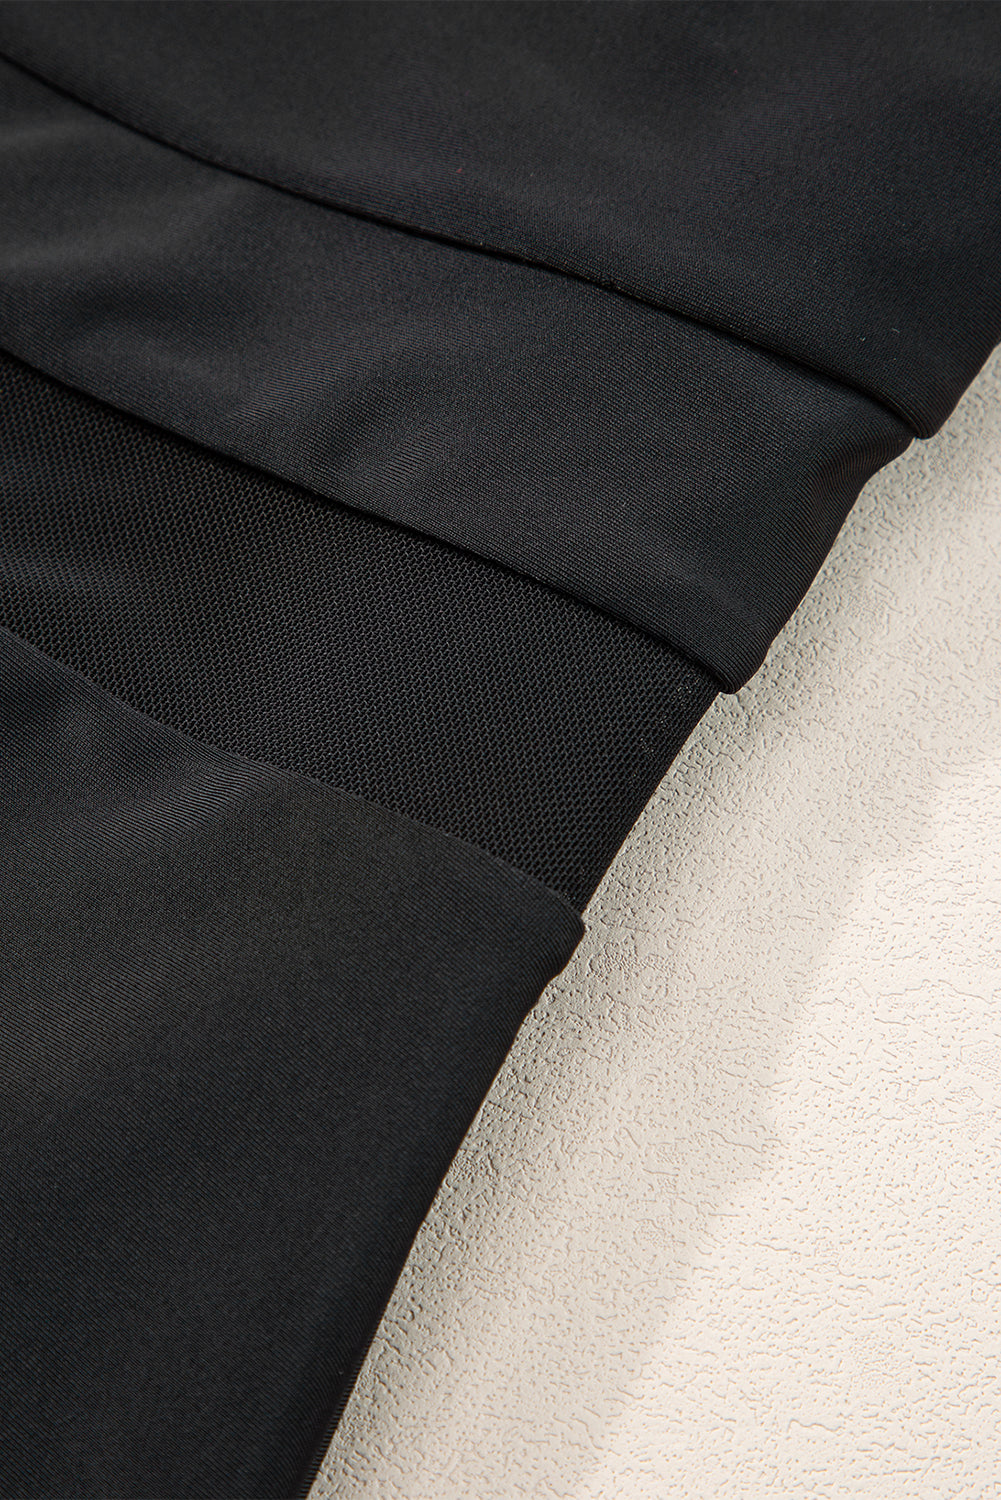 Schwarzer Teddy-Badeanzug mit Netzeinsatz, One-Shoulder und hoher Taille